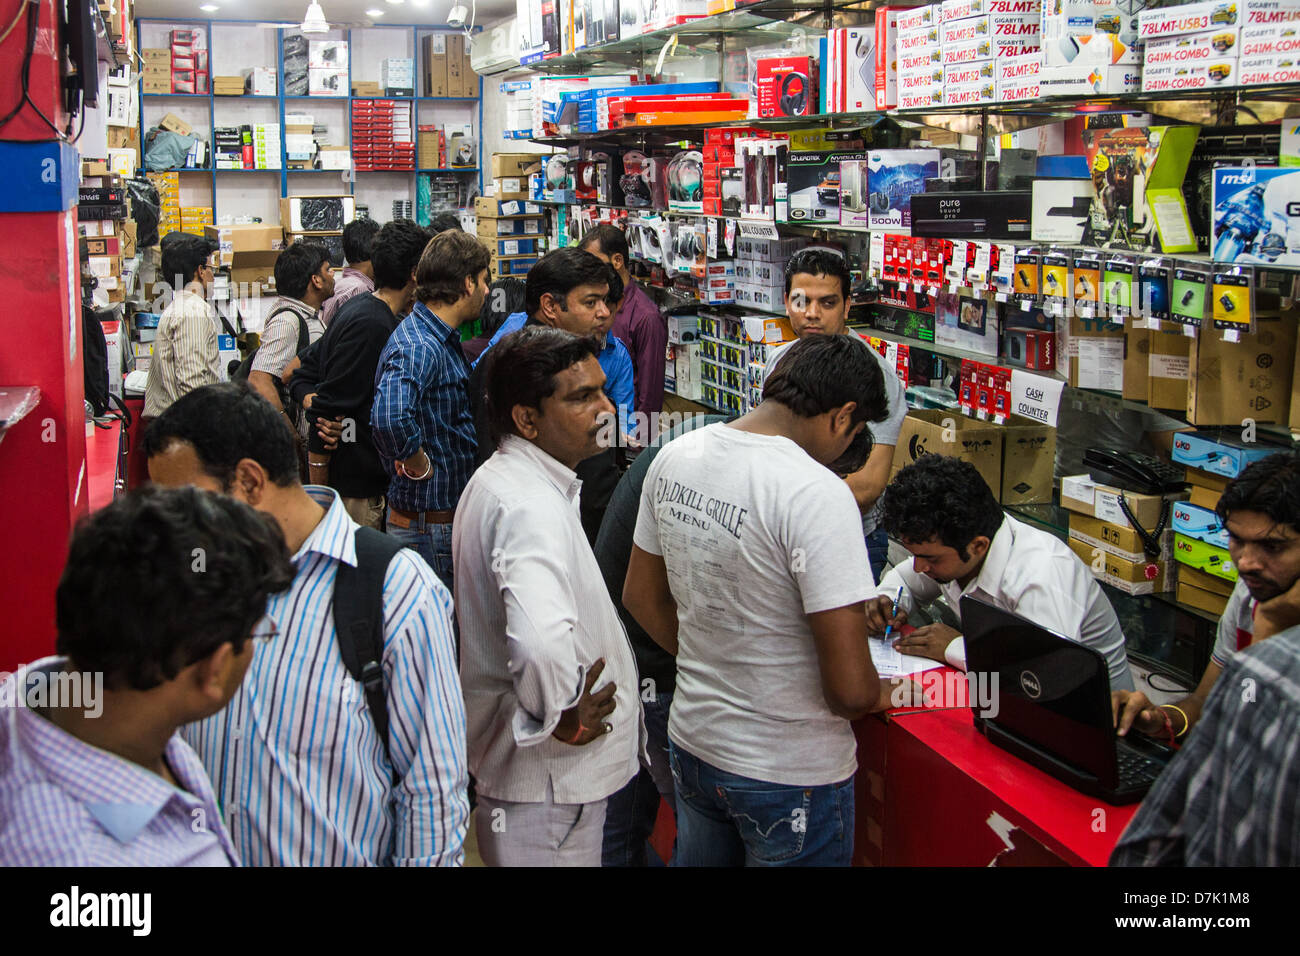 Neru statt Computer und Elektronik-Markt, Delhi, Indien Stockfoto